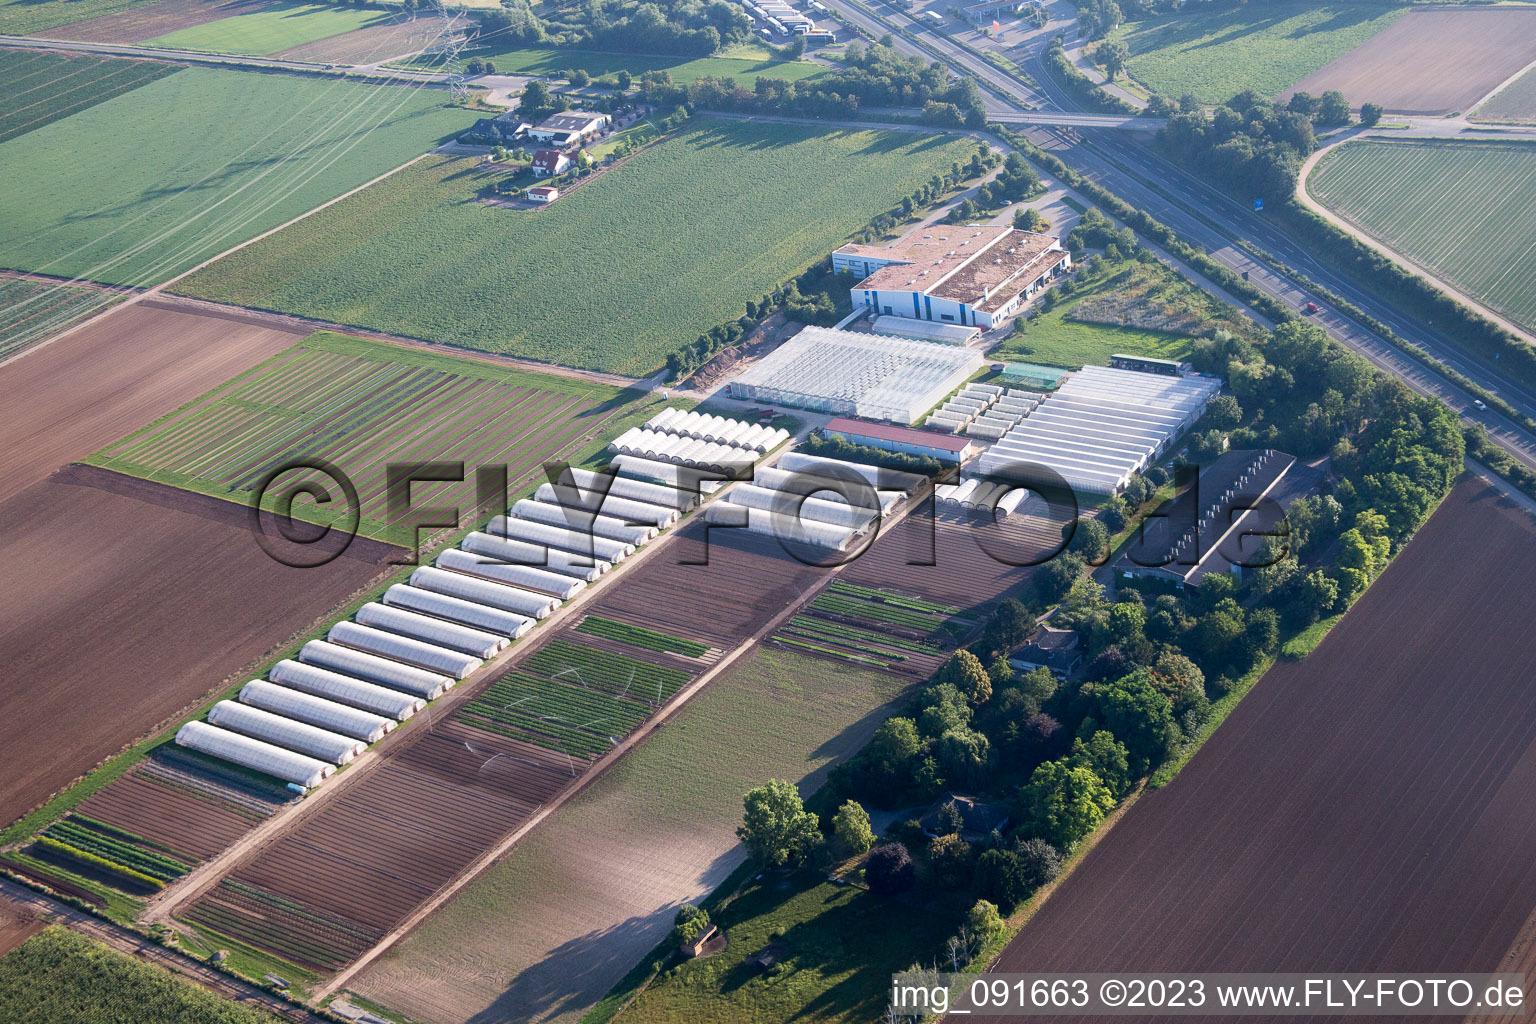 Aerial view of Enza Zaden Germany GmbH in the district Dannstadt in Dannstadt-Schauernheim in the state Rhineland-Palatinate, Germany